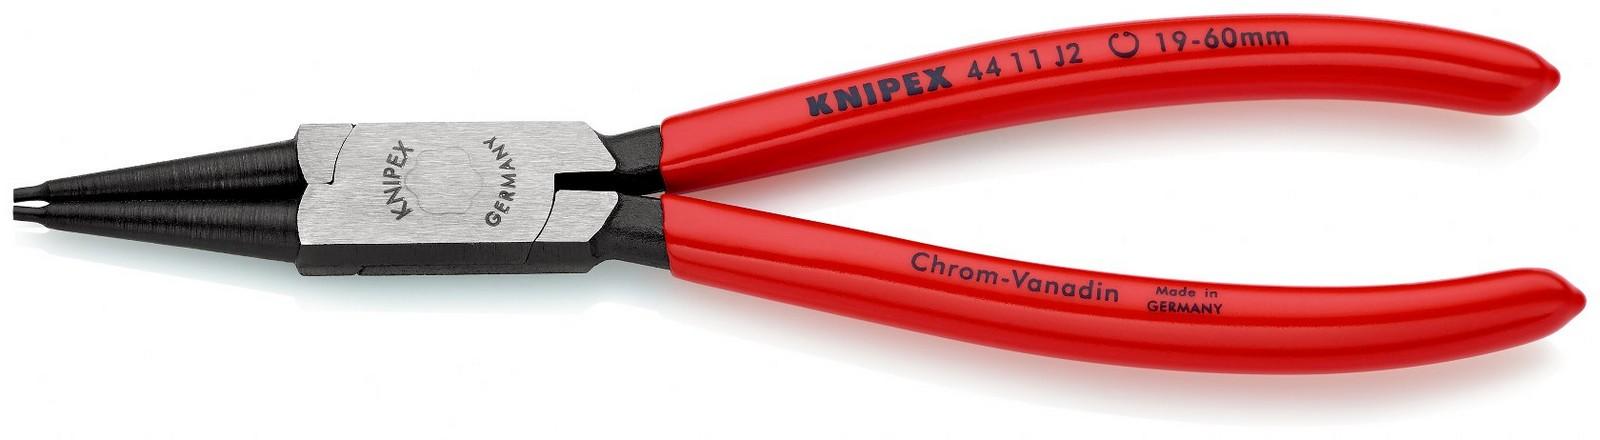 KNIPEX Klešta za unutrašnje sigurnosne prstenove 180mm 44 11 J2 crvena